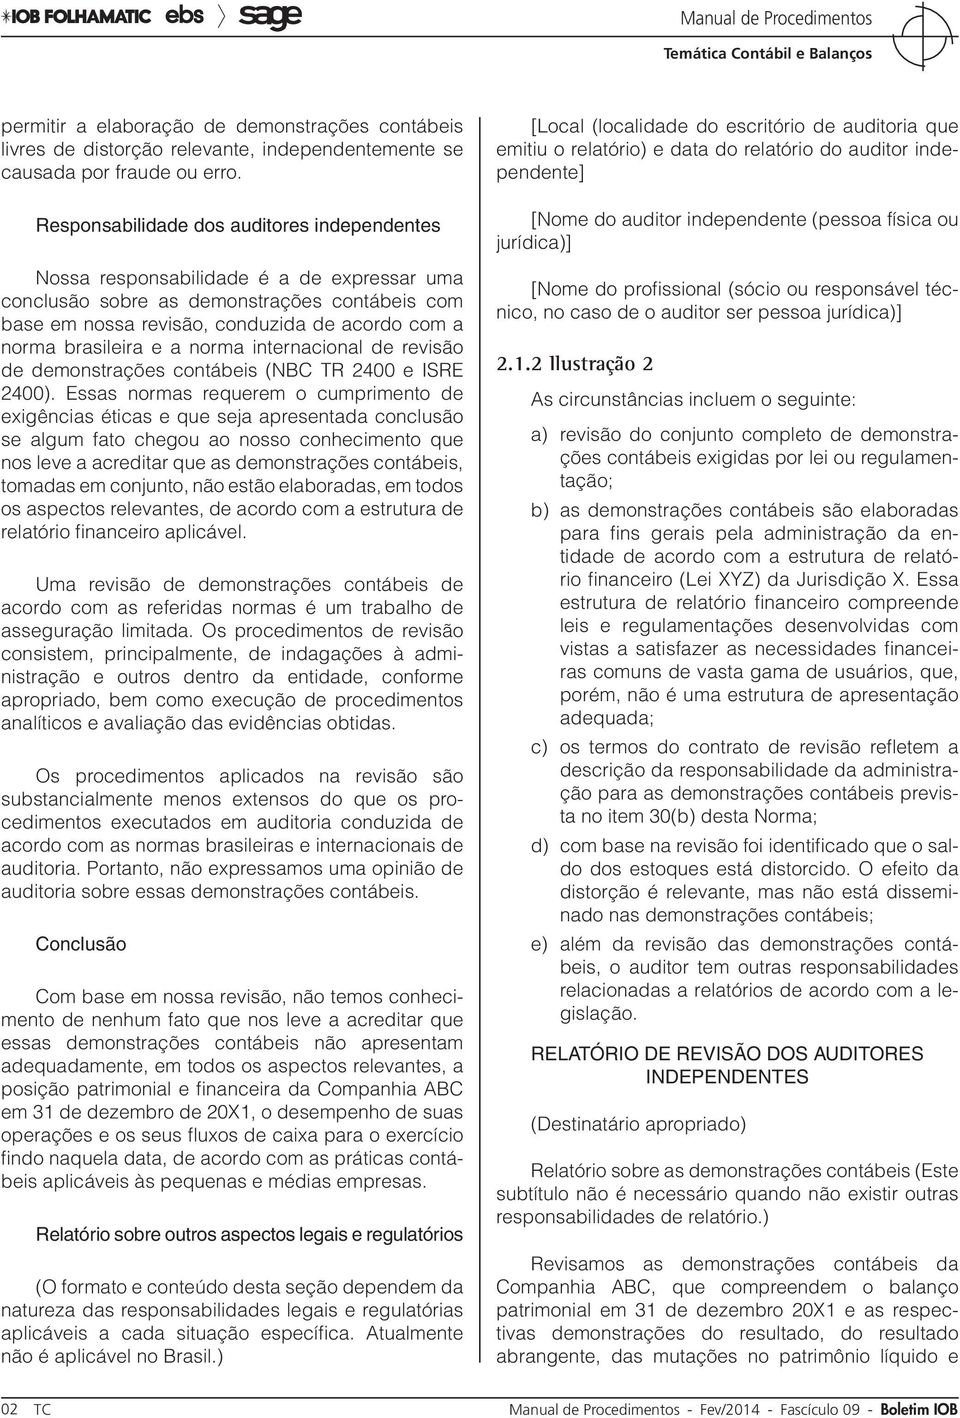 brasileira e a norma internacional de revisão de demonstrações contábeis (NBC TR 2400 e ISRE 2400).